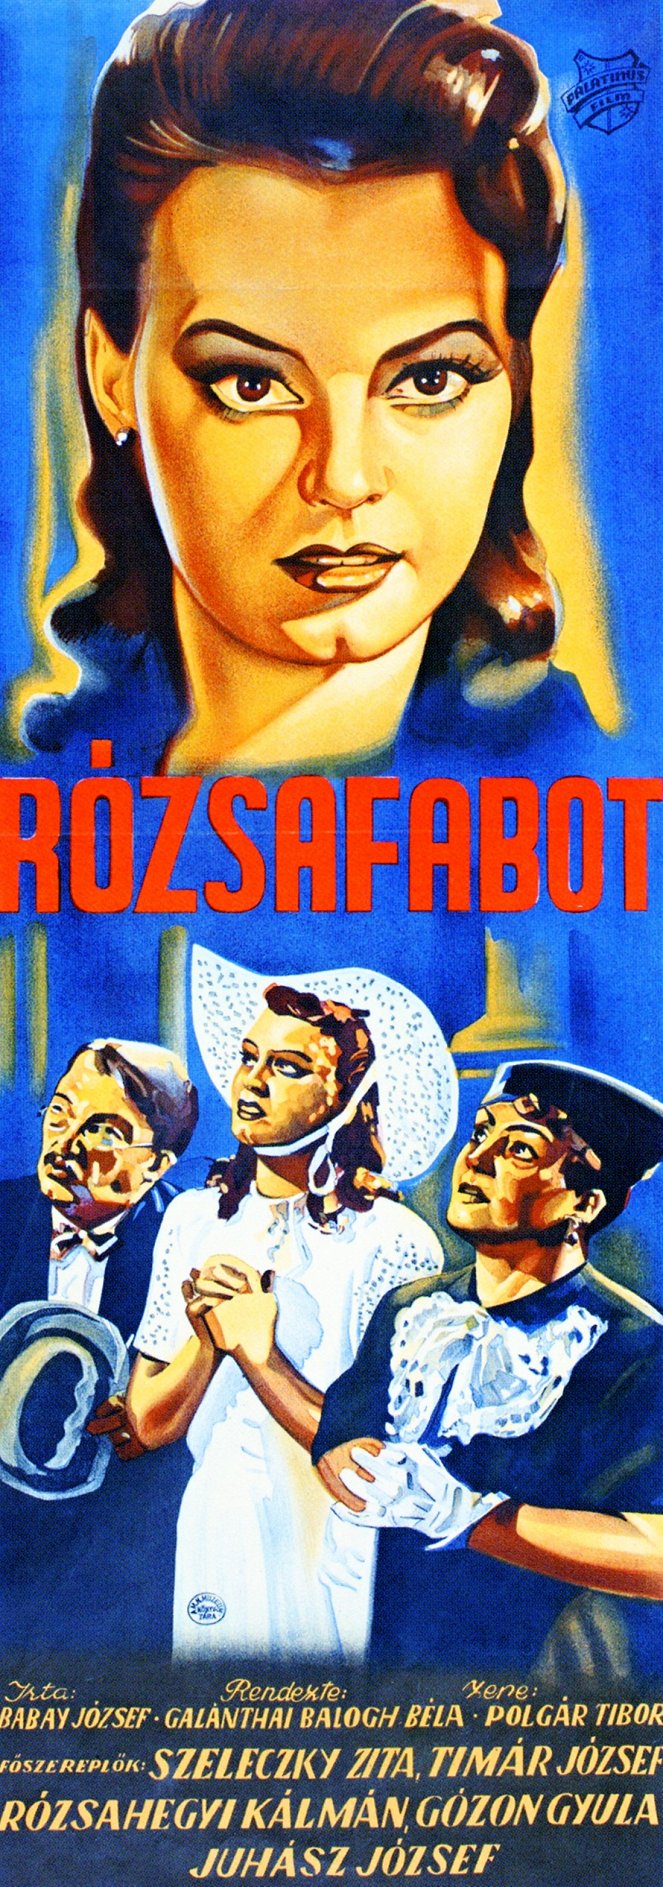 Rózsafabot - Plakate